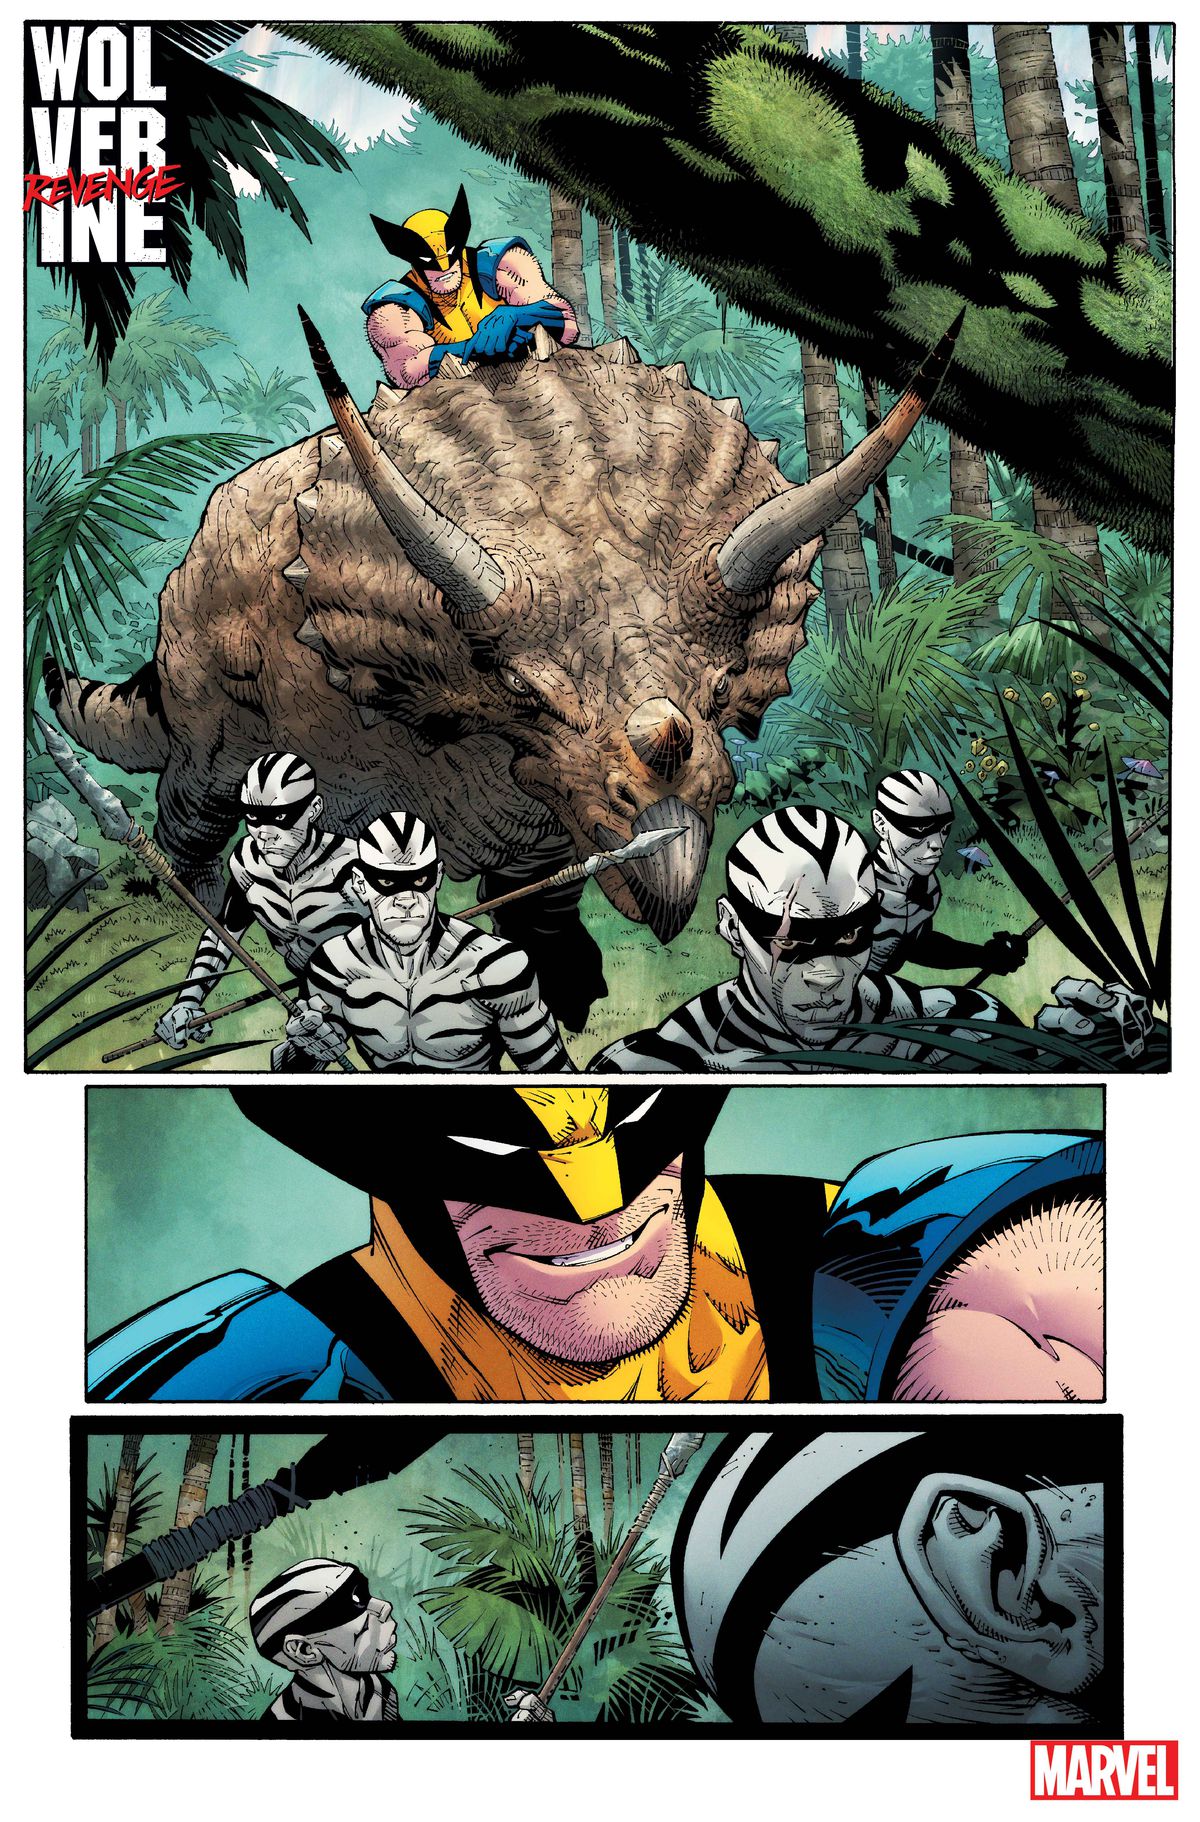 Wolverine jeździ na triceratopsie po dzikiej krainie w towarzystwie członków Ludu Zebry w Wolverine: Revenge #1.